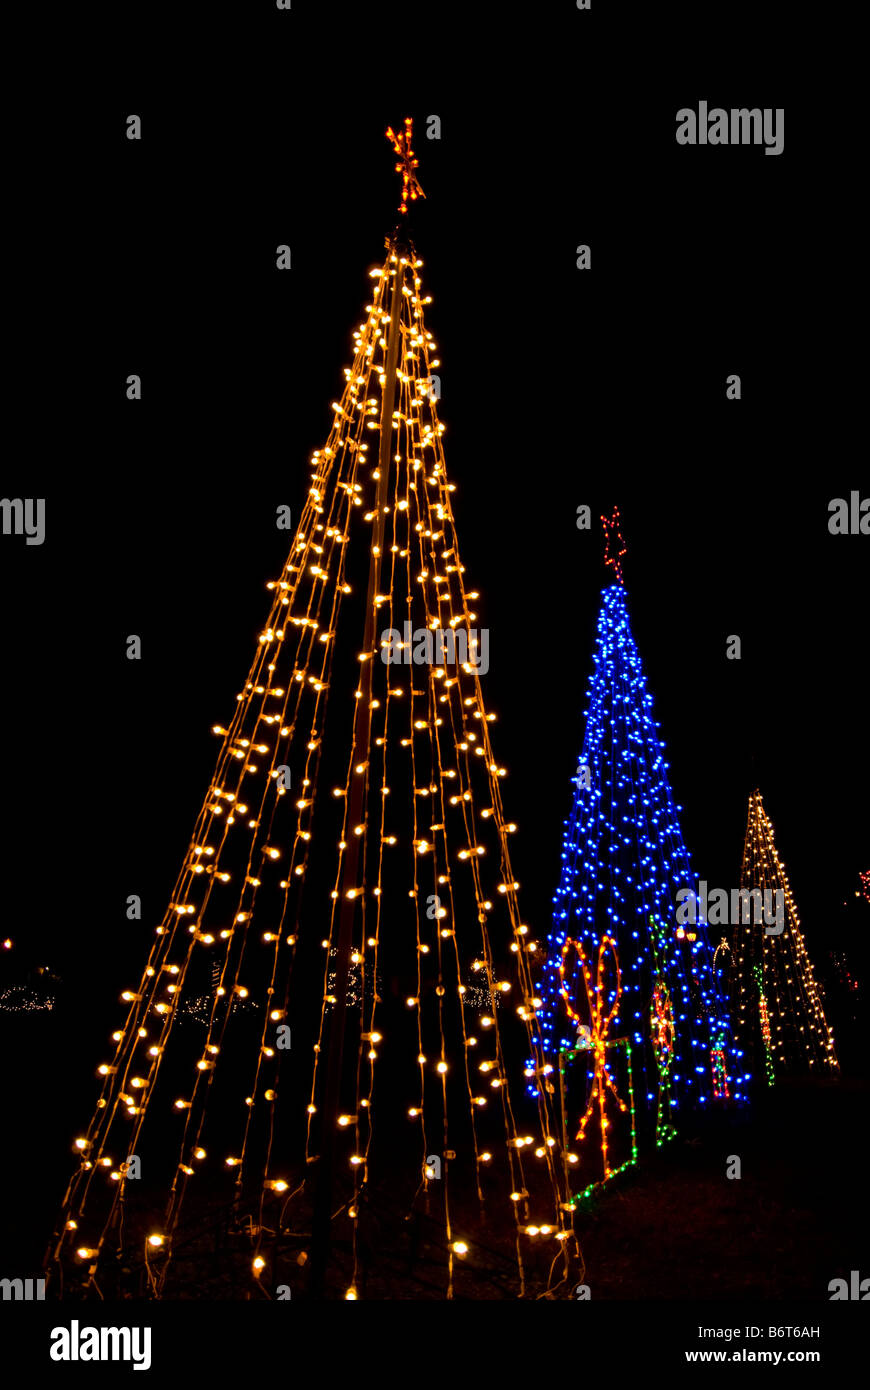 Les arbres de Noël trois couleurs deux feux blancs le feu bleu nuit de l'arbre de Noël fond sombre dramatique Banque D'Images